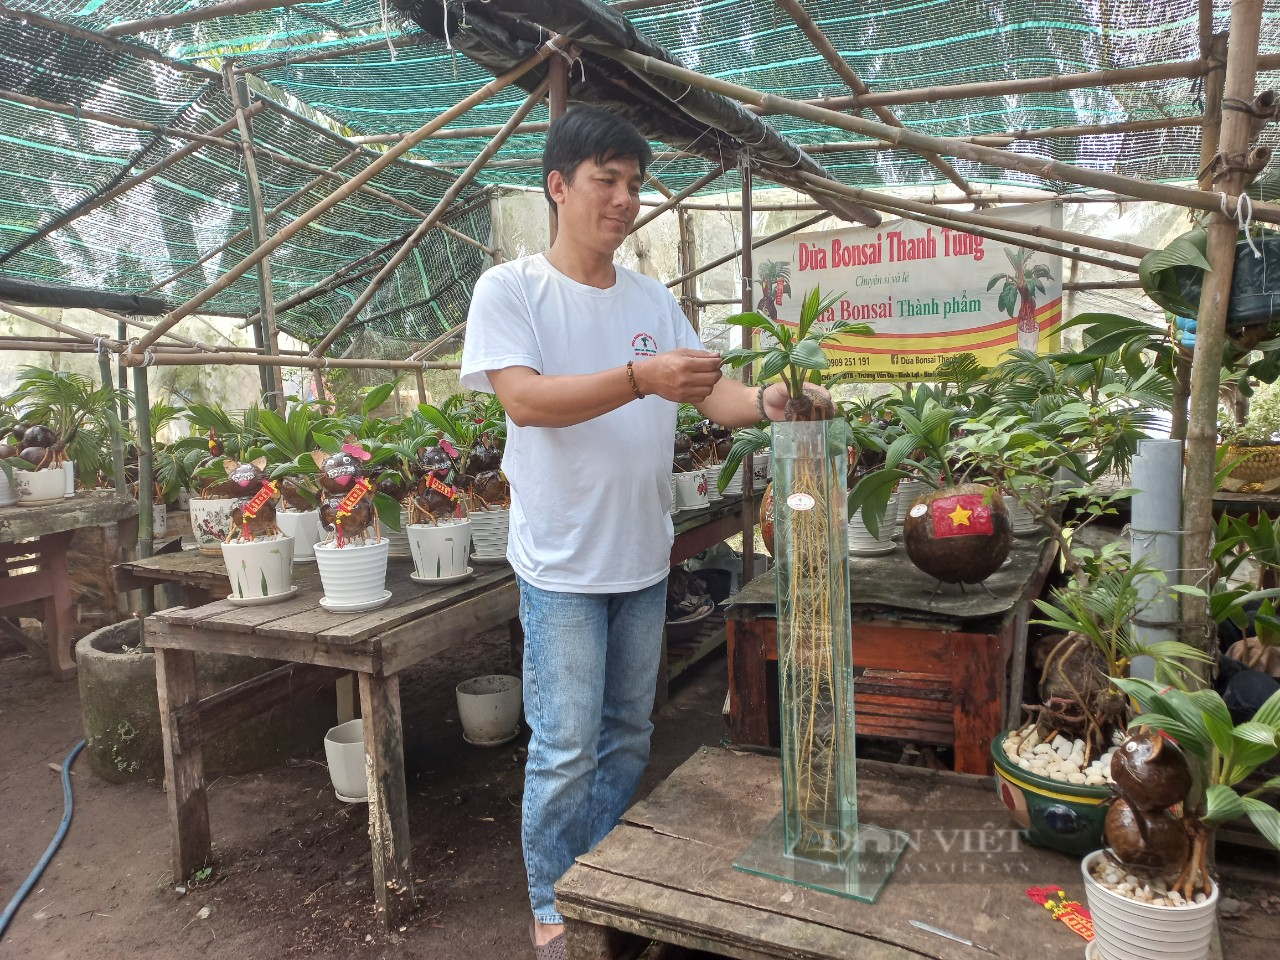 Độc lạ cây dừa bonsai chơi Tết có bộ rễ trắng dài cả mét ở TP.HCM - Ảnh 1.